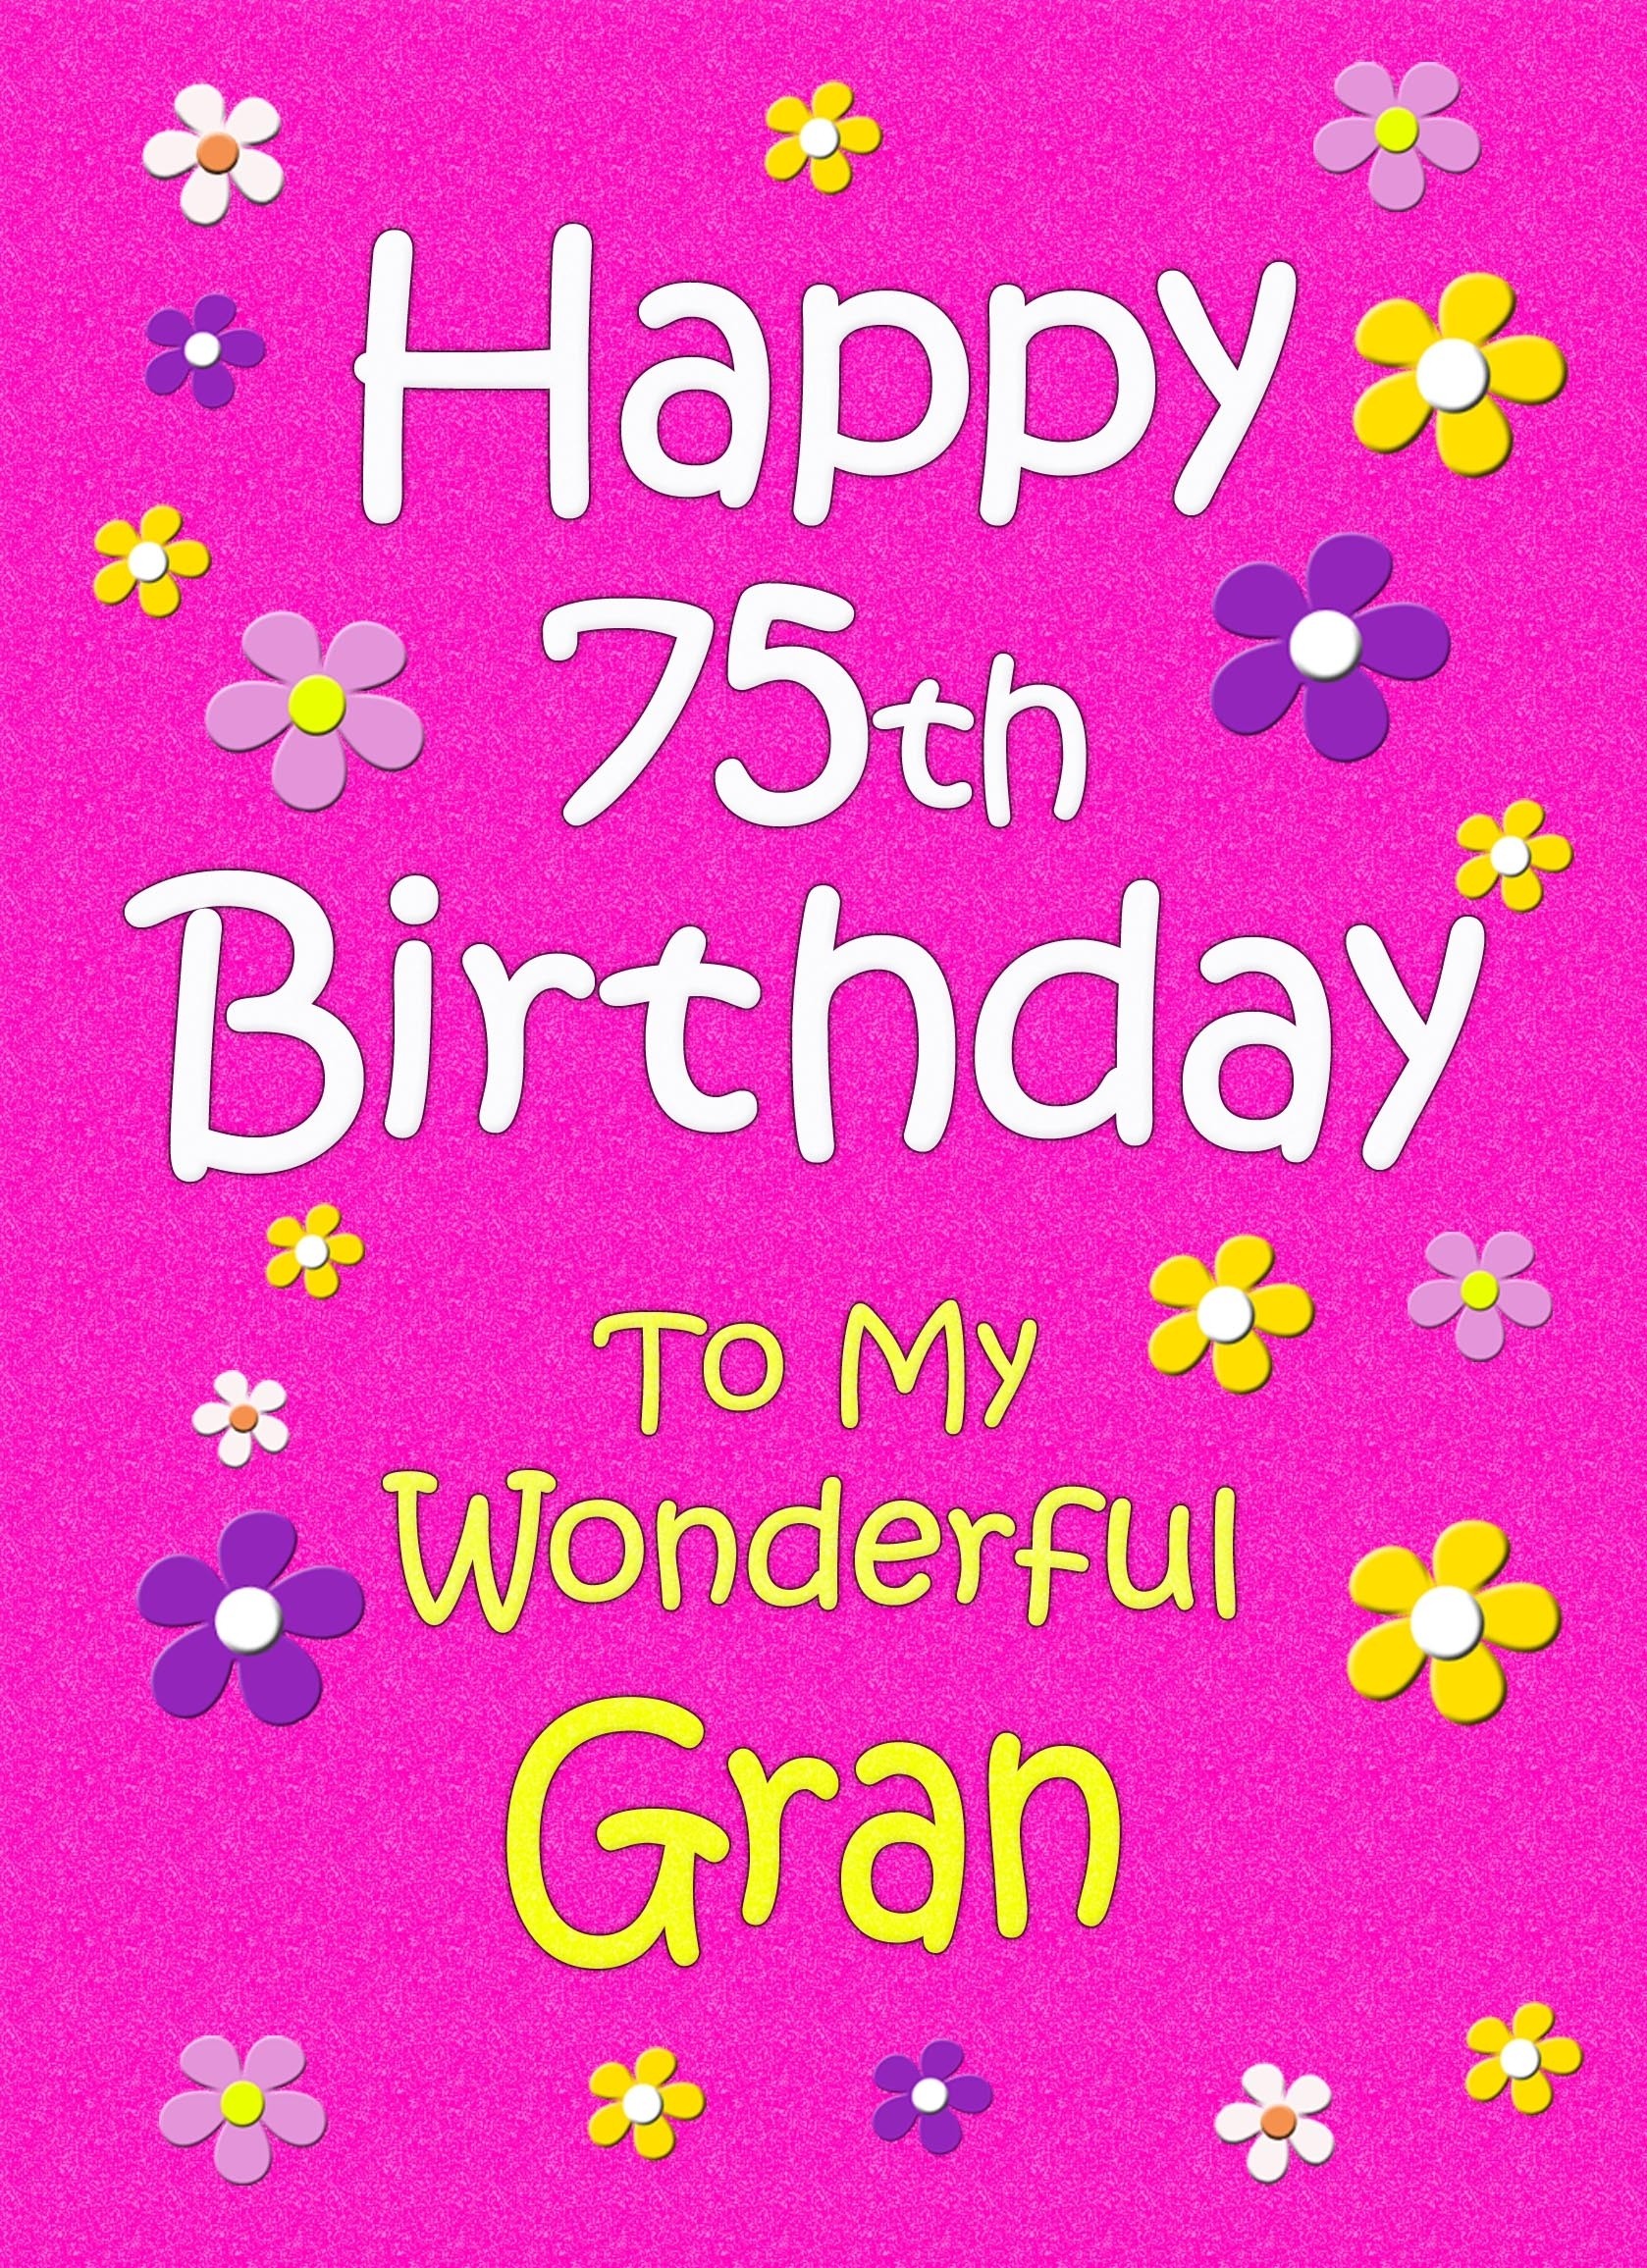 Gran 75th Birthday Card (Pink)